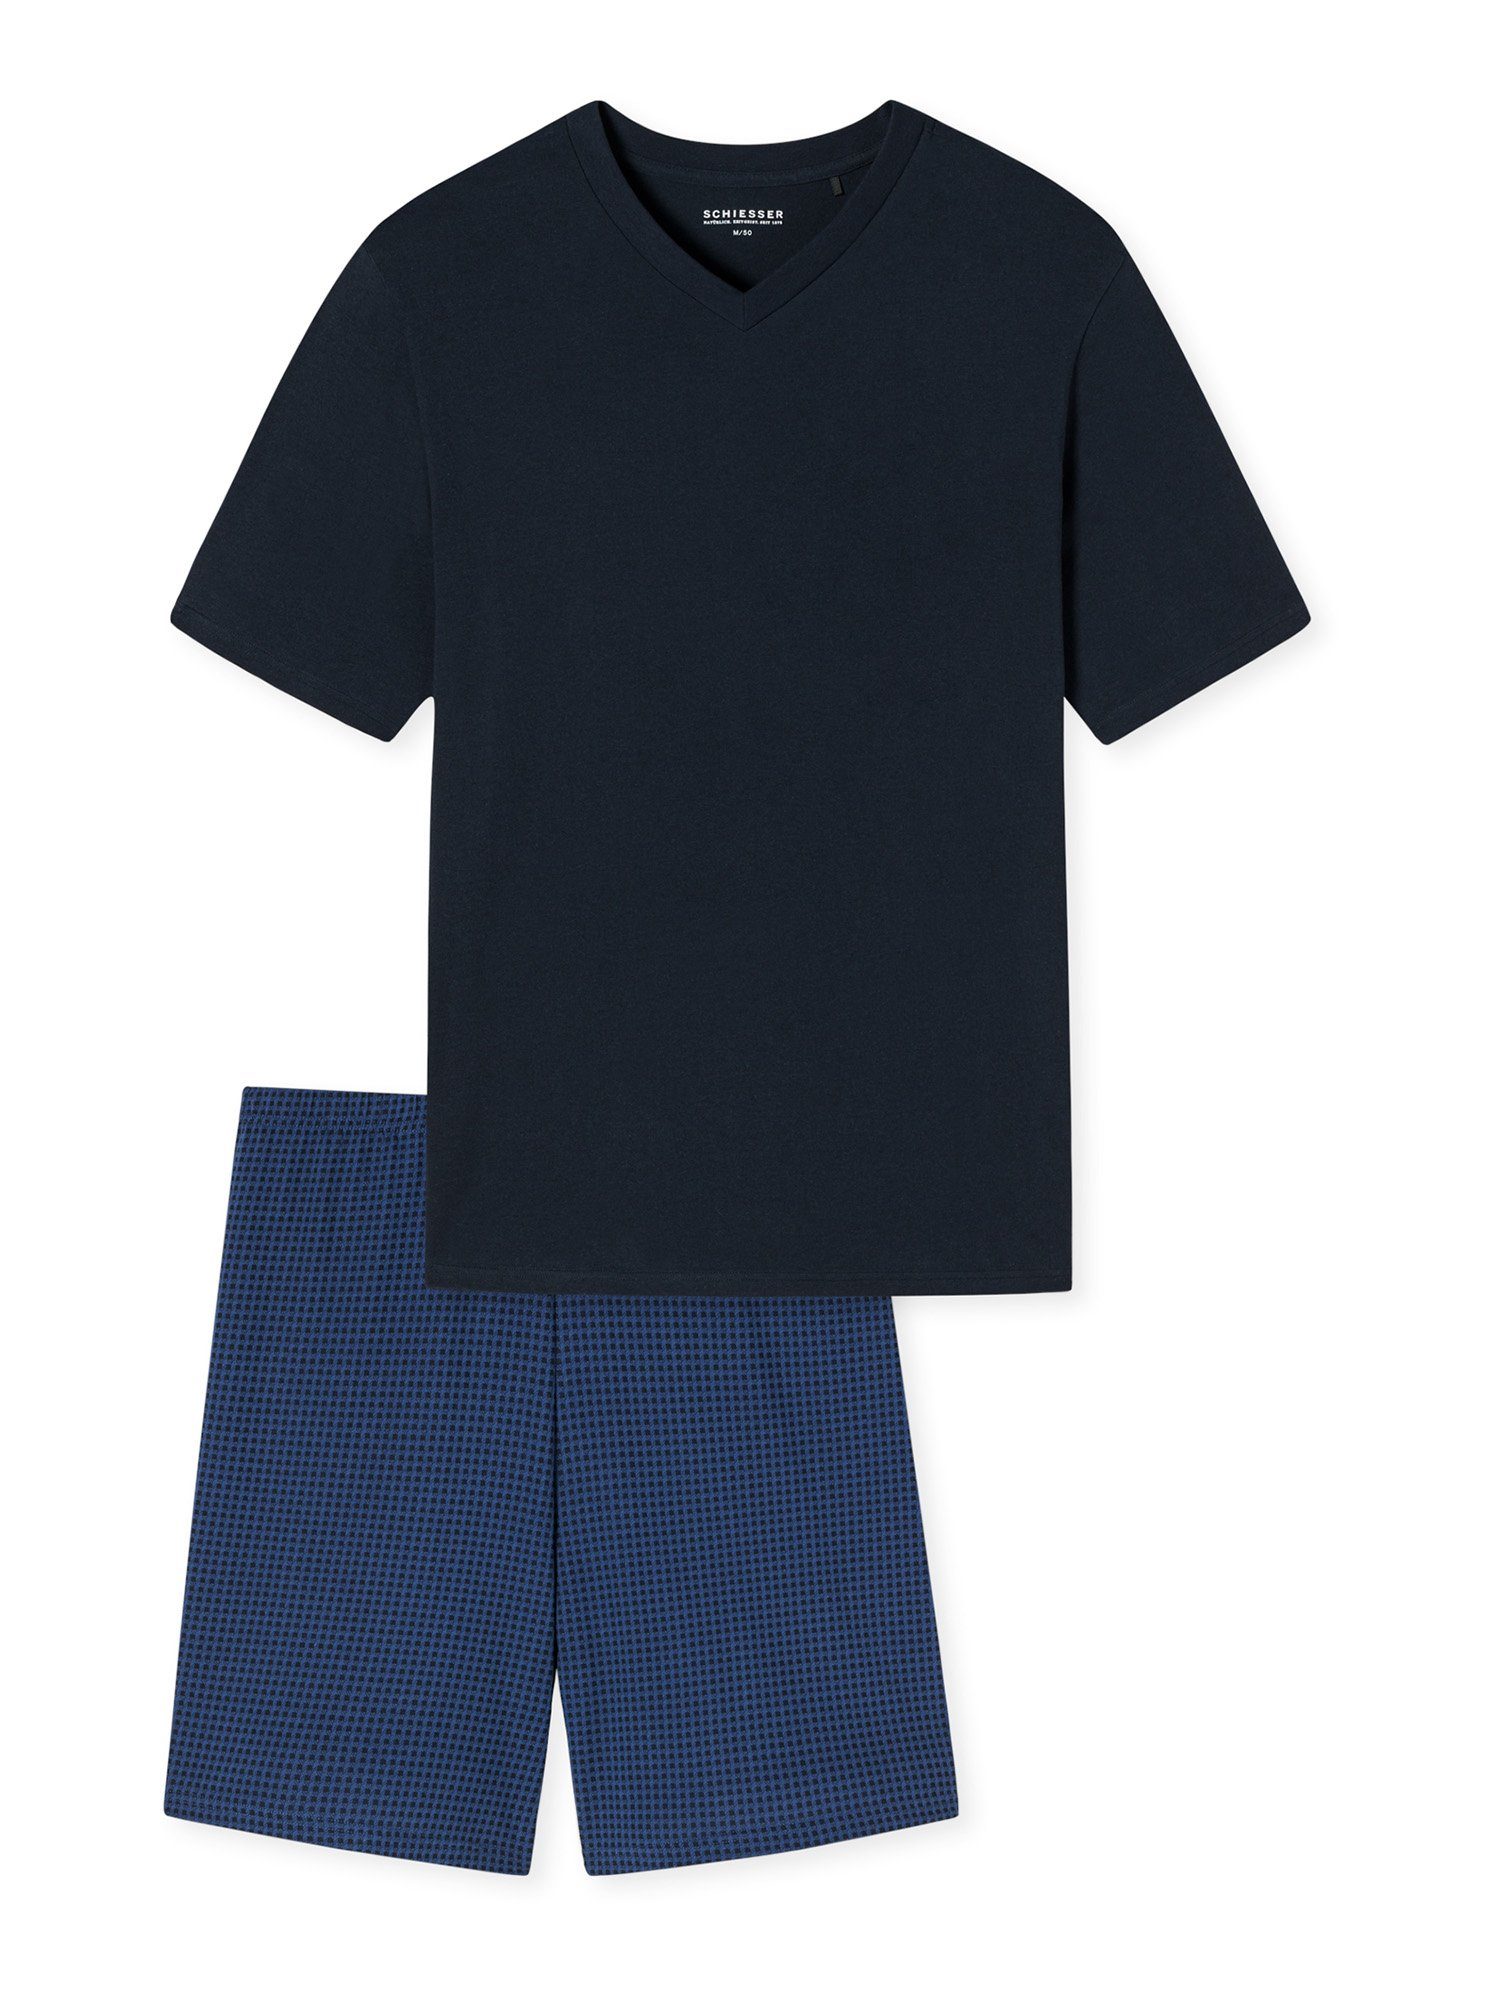 Schiesser Shorty Comfort Essentials Shorty leichter Schlafanzug nachtblau